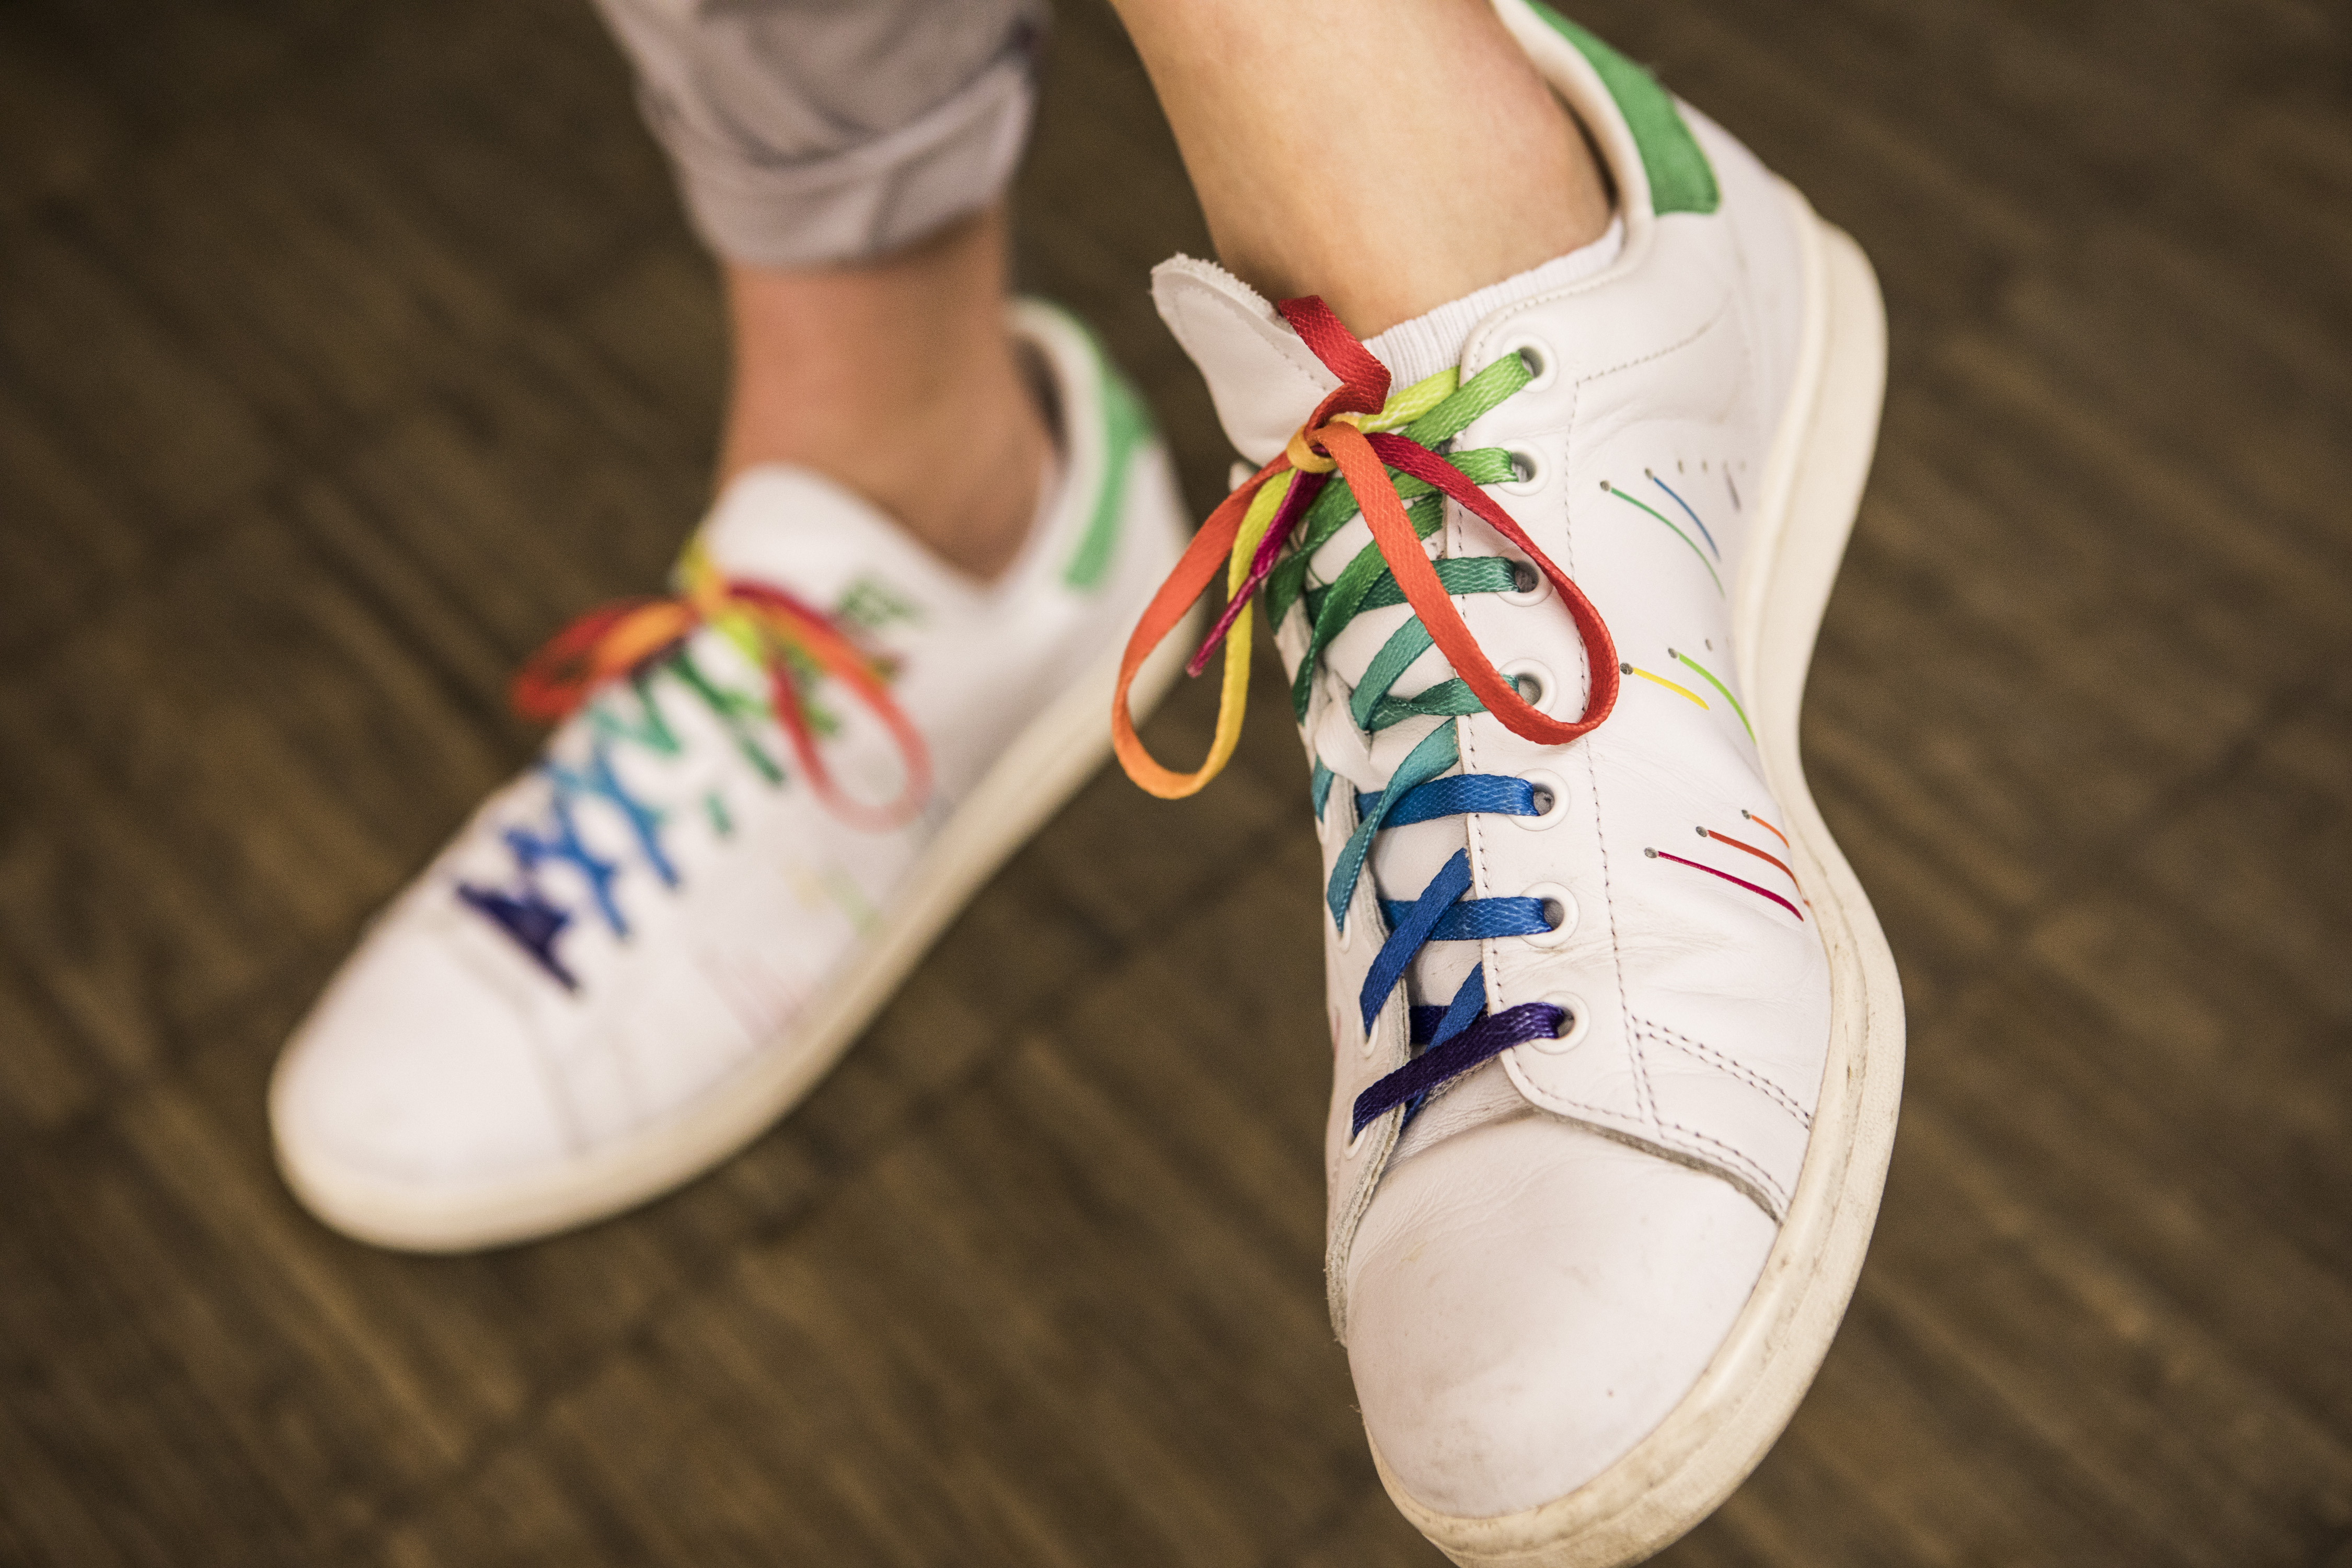 Detailaufnahme Schuhe mit Schnürsenkeln in Regenbogenfarben.